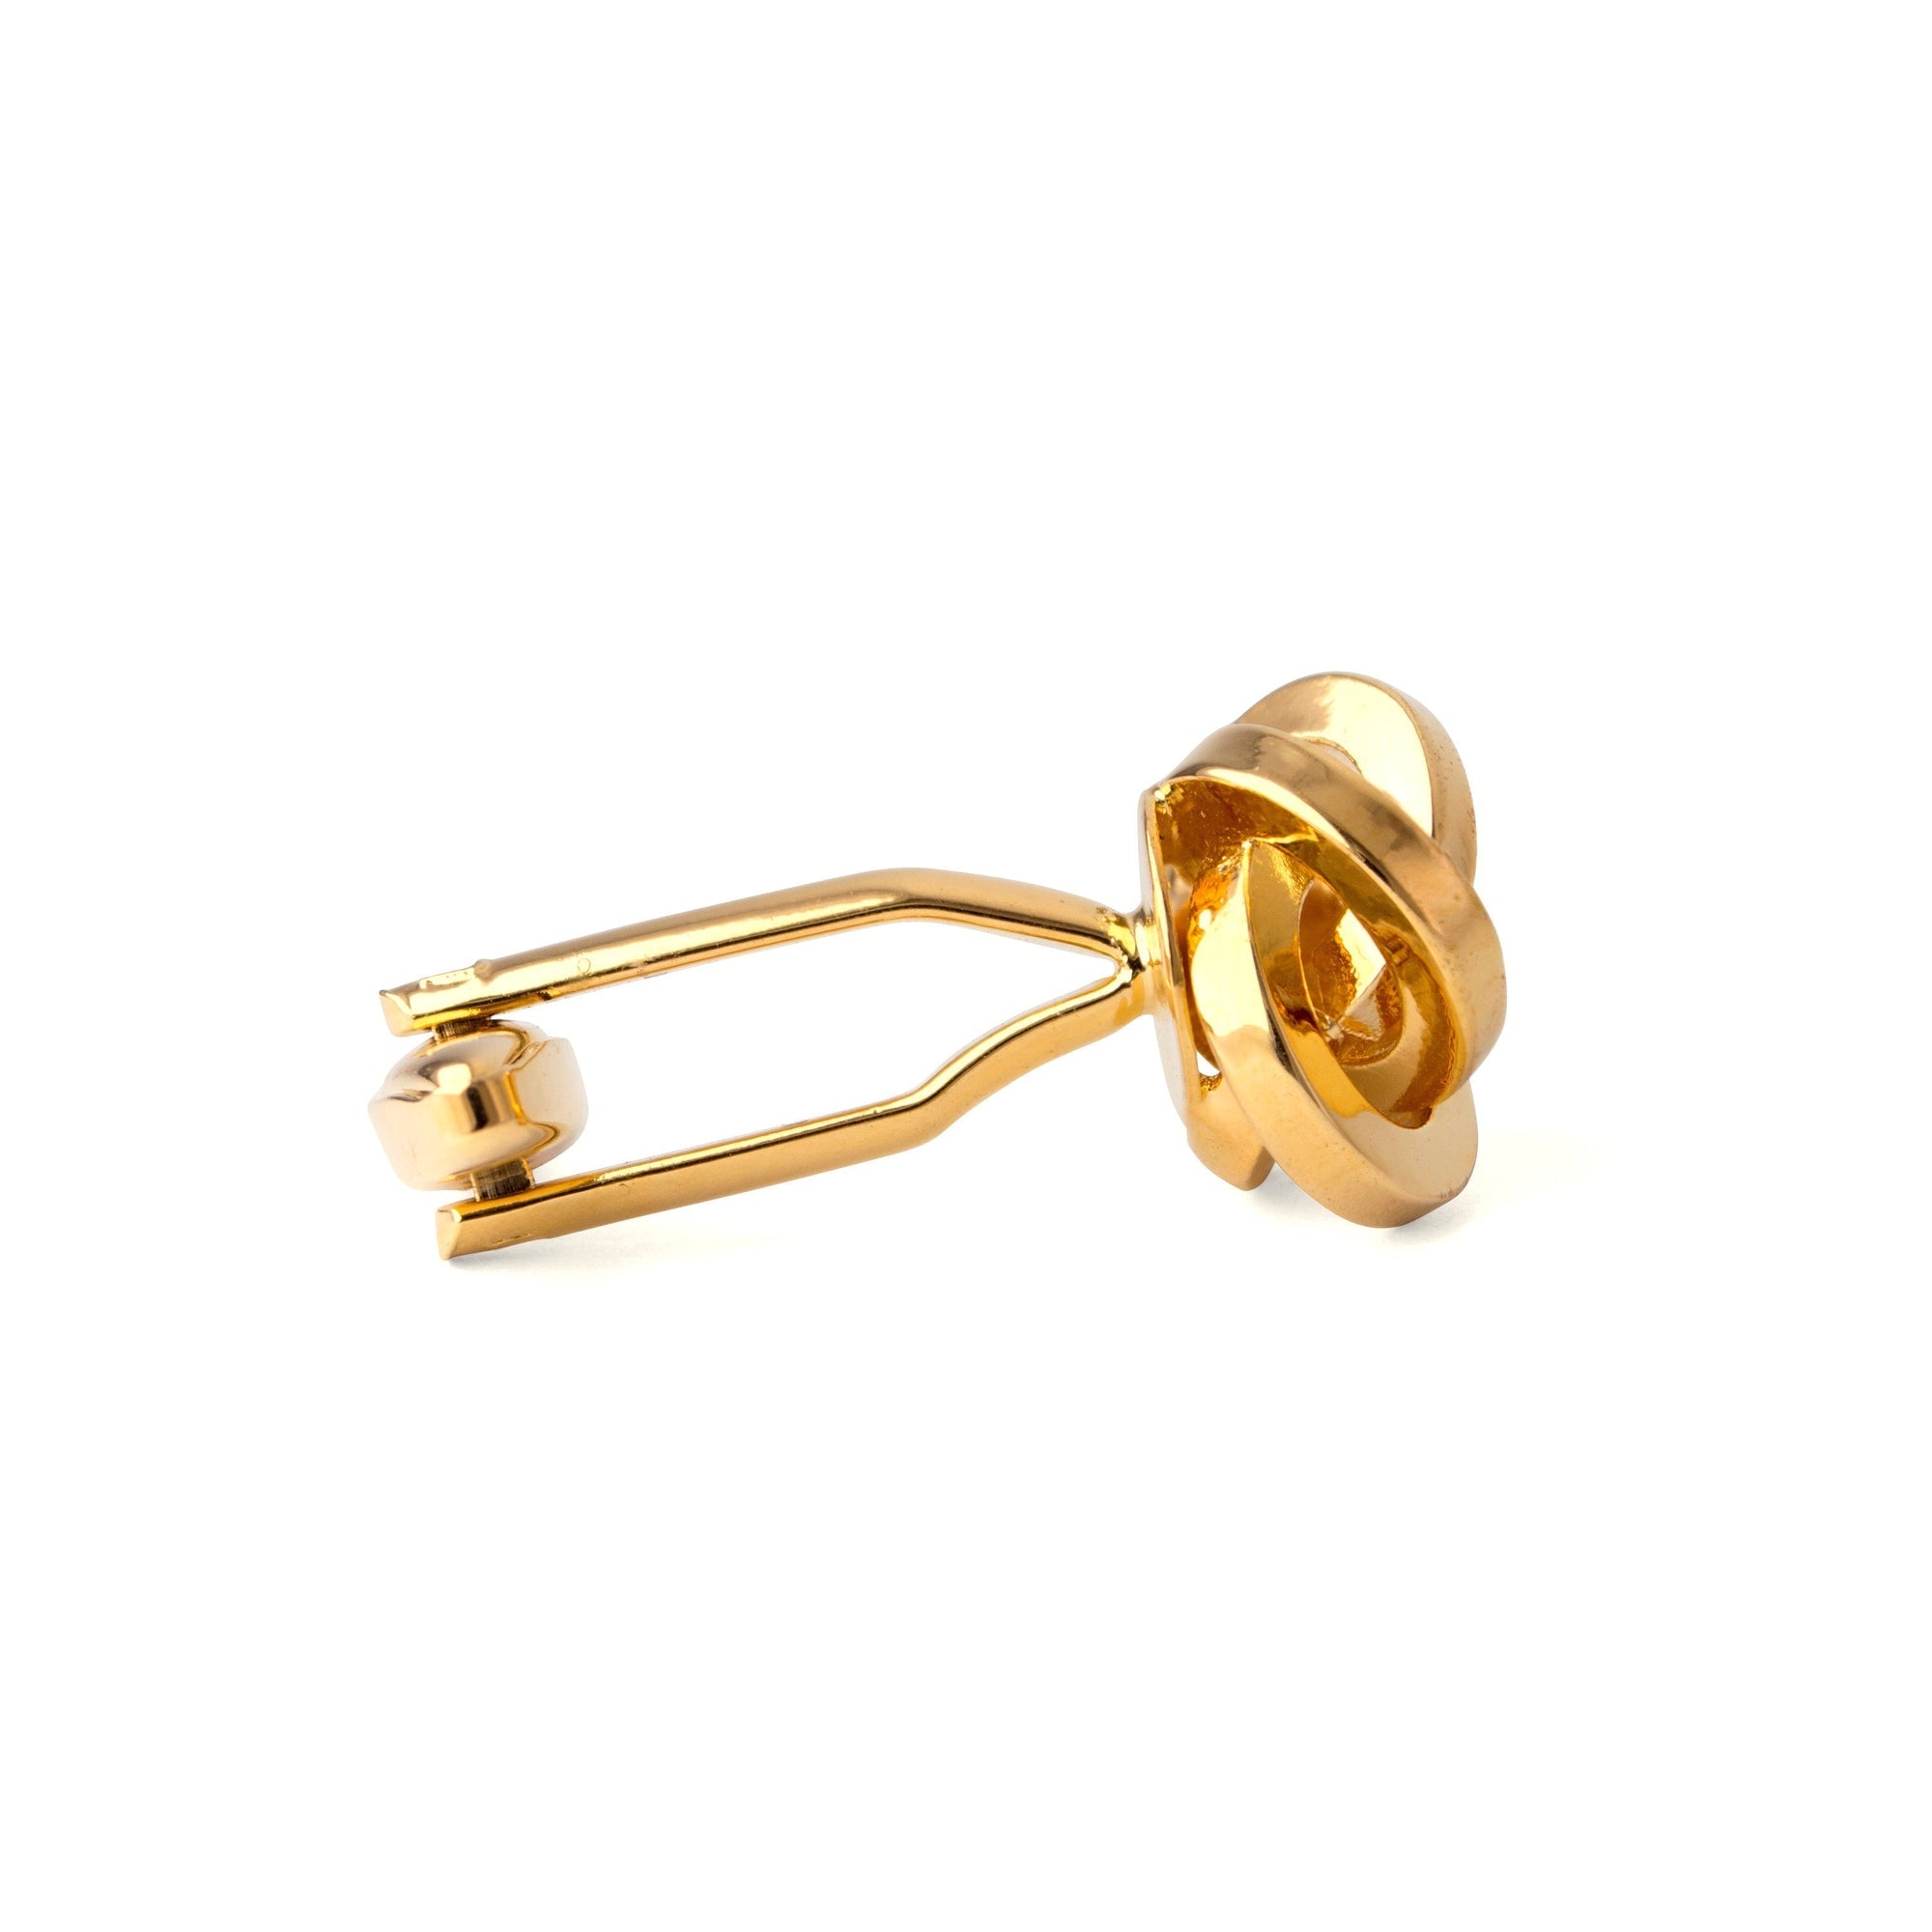 Knot Gold-toned brass cufflinks F-Cufflinks.com.sg